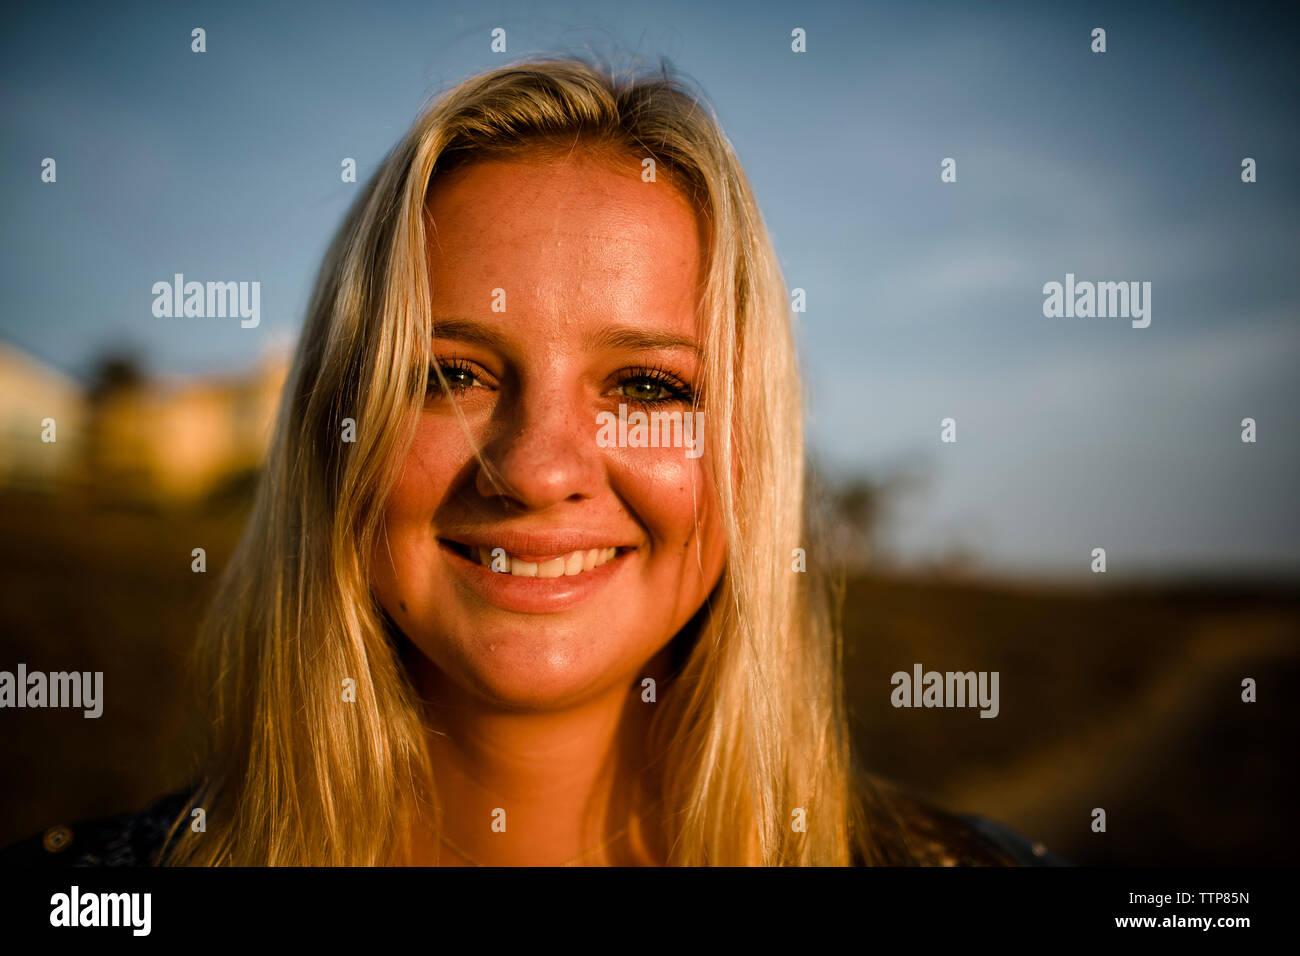 Close-up portrait of smiling woman with Blonde hair comité permanent à la sky pendant le coucher du soleil Banque D'Images